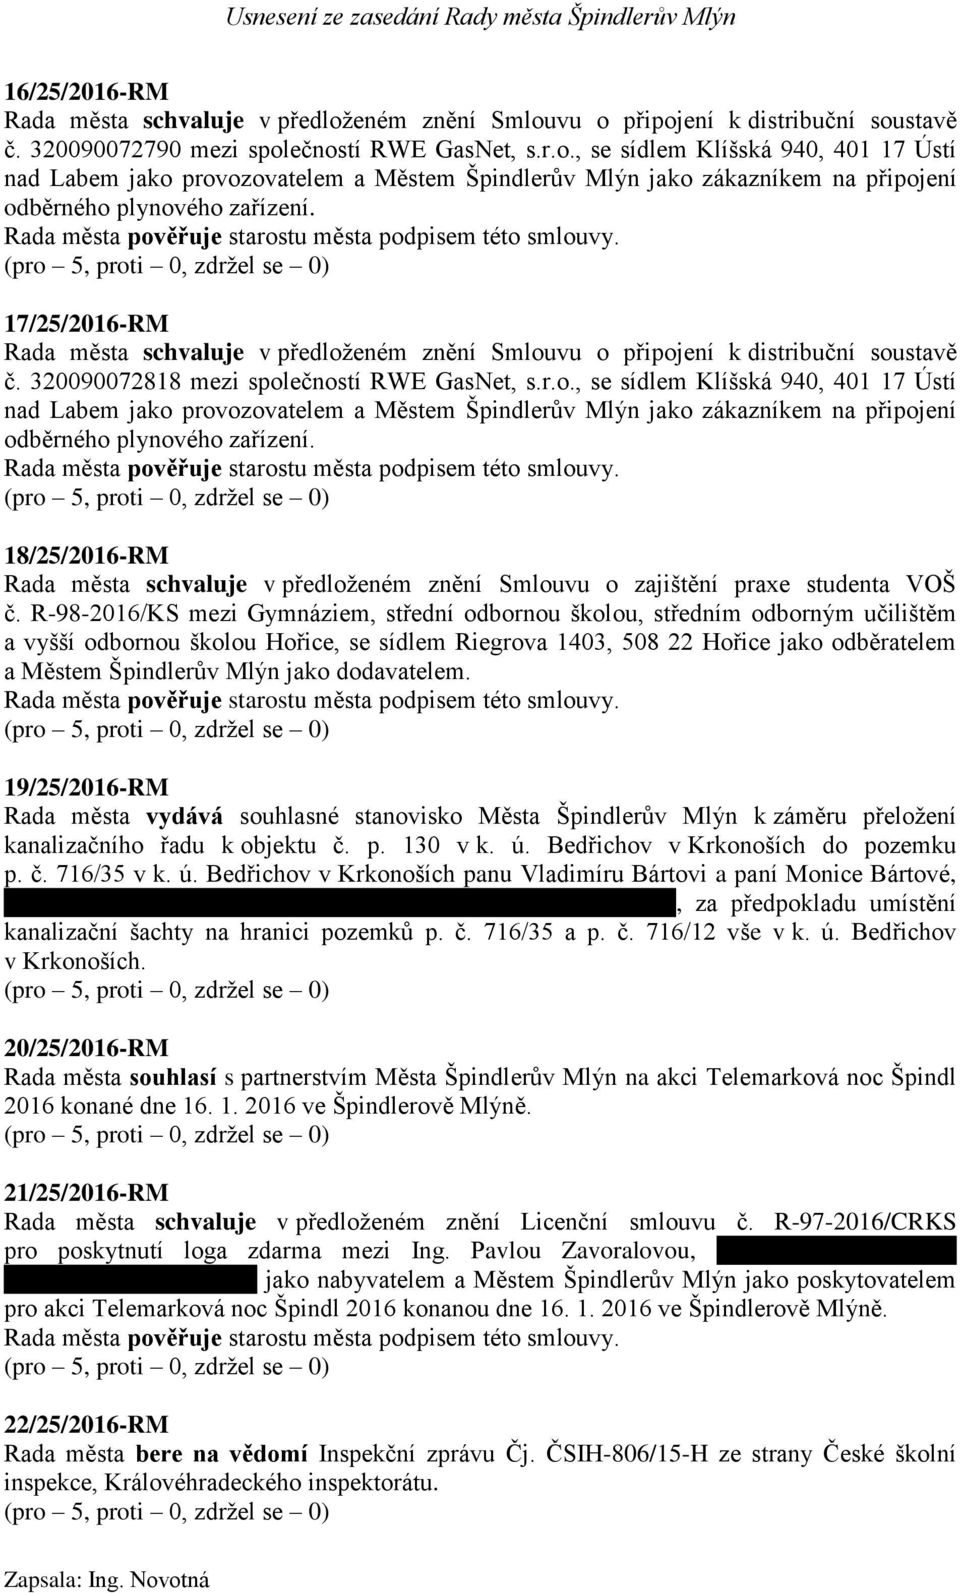 18/25/2016-RM Rada města schvaluje v předloženém znění Smlouvu o zajištění praxe studenta VOŠ č.